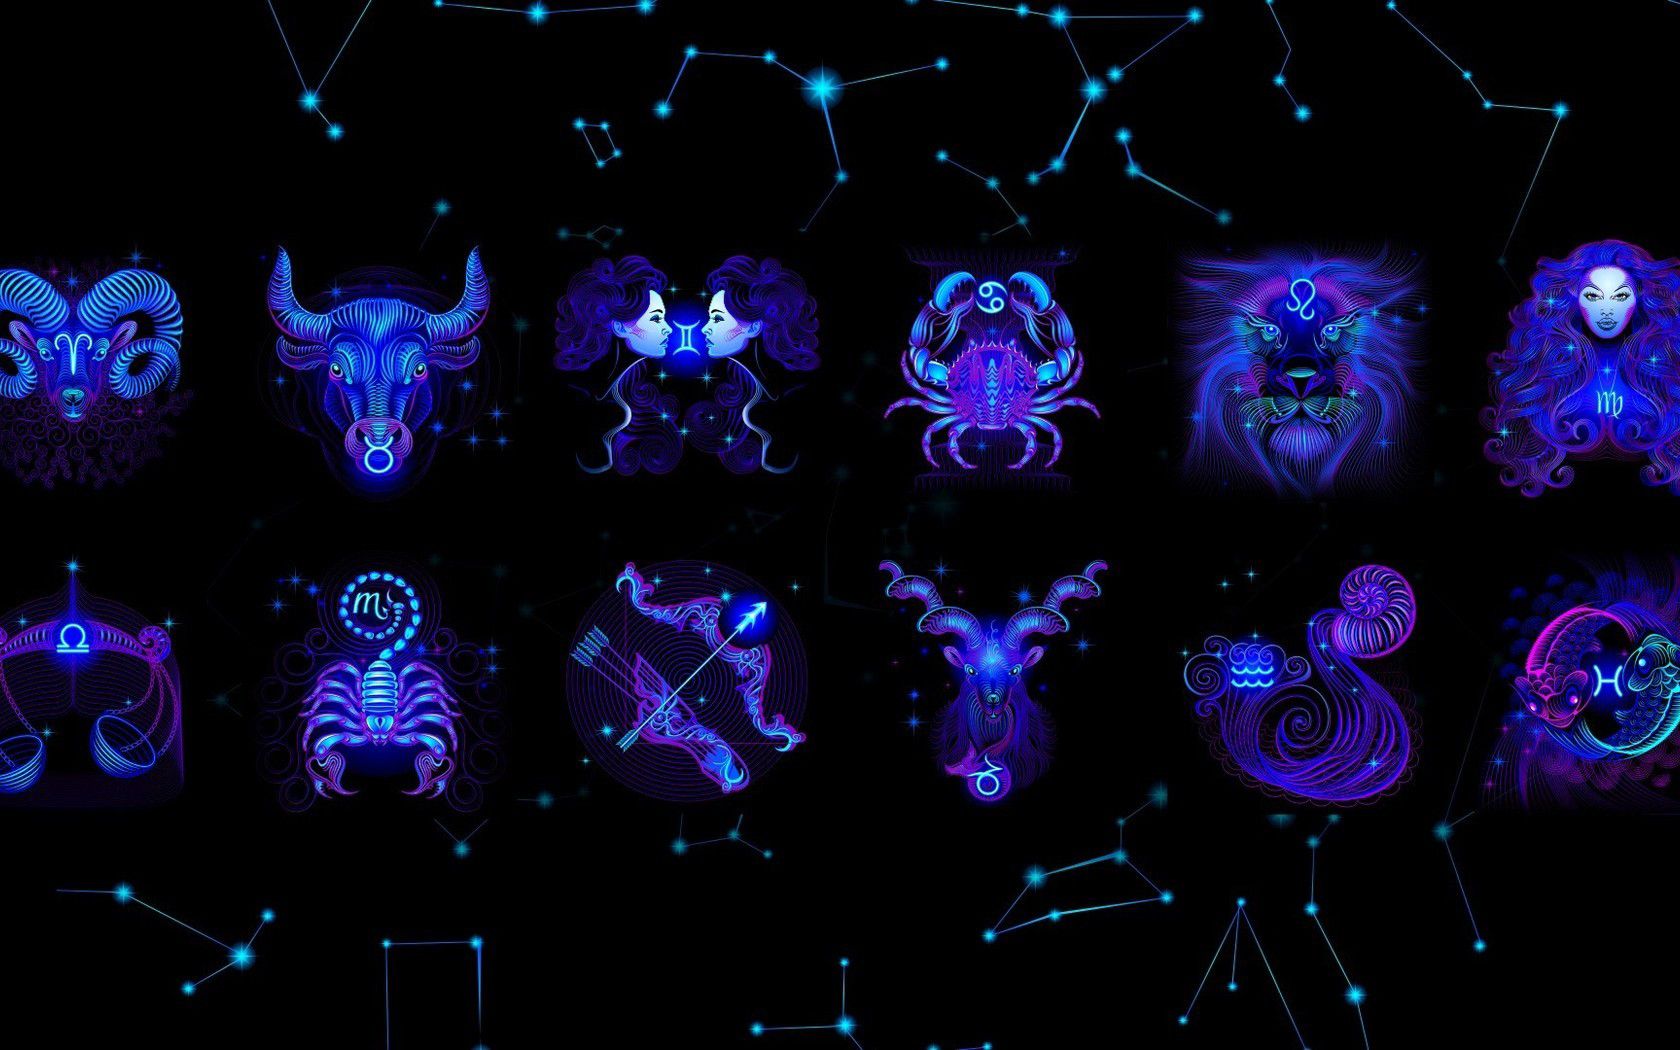 Horoscope Signs Wallpaper. Horoscope Wallpaper, Horoscope Signs Wallpaper and Gemini Horoscope Wallpaper